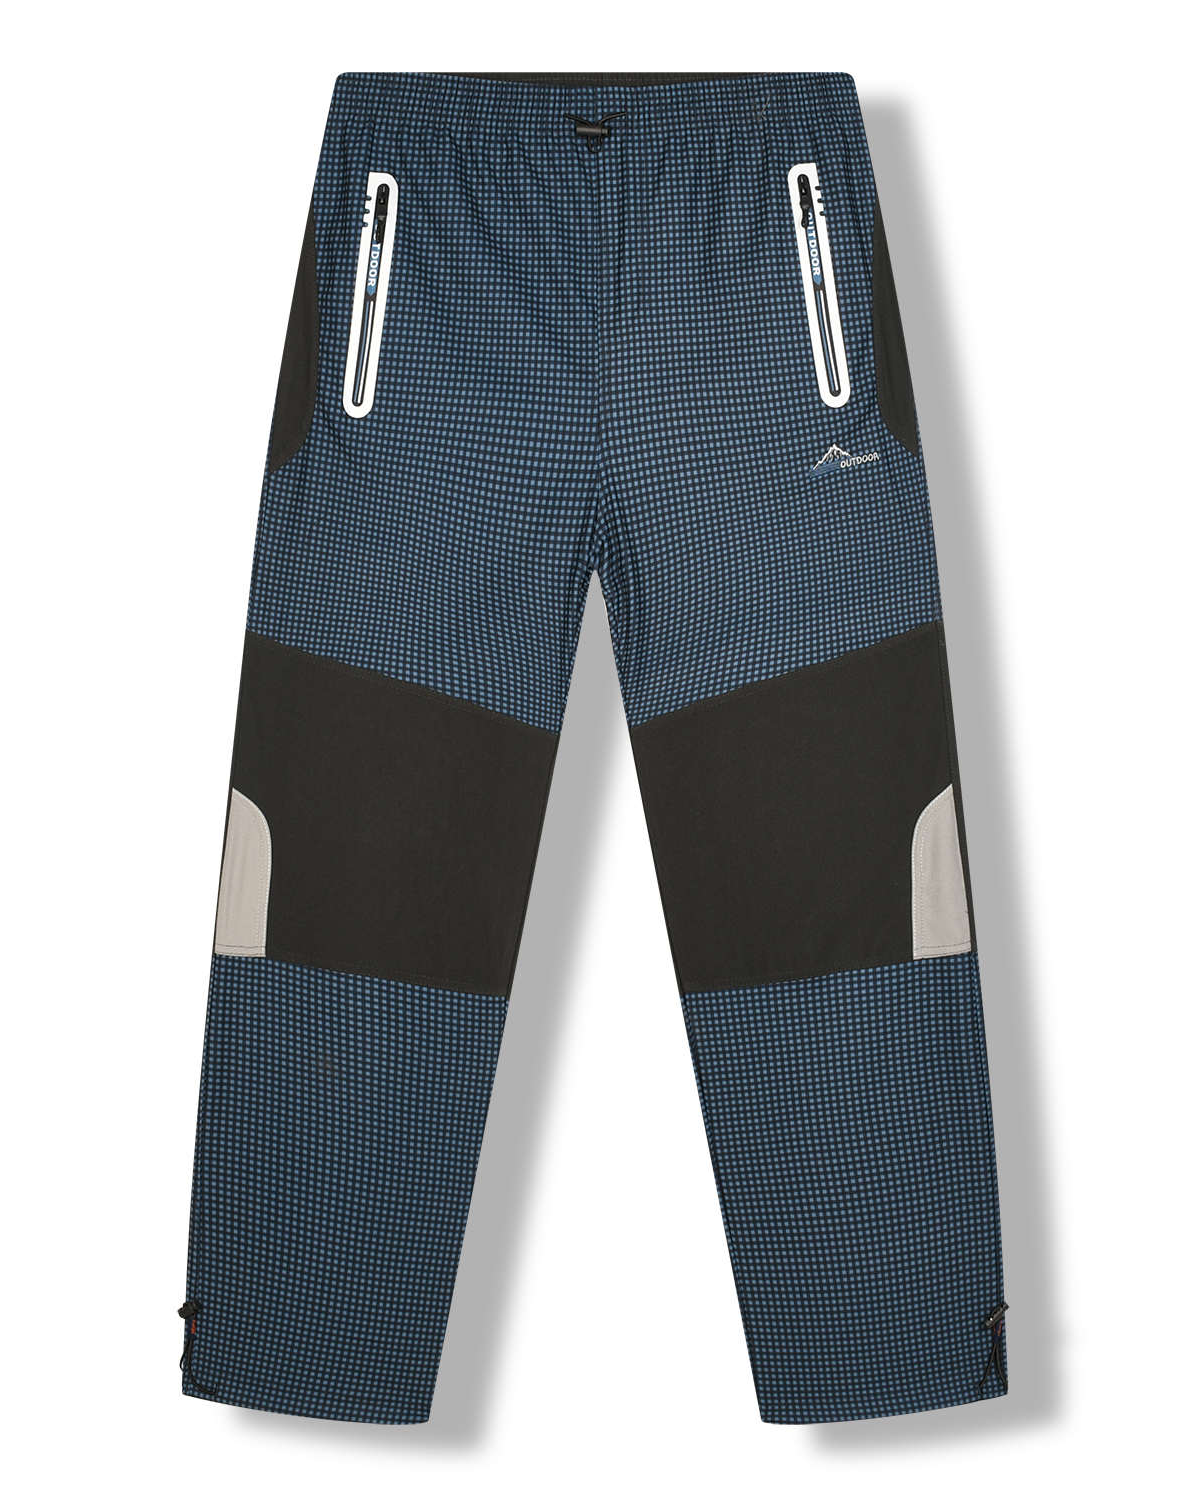 Pánské outdoorové kalhoty - KUGO G8551, petrol Barva: Petrol, Velikost: XL